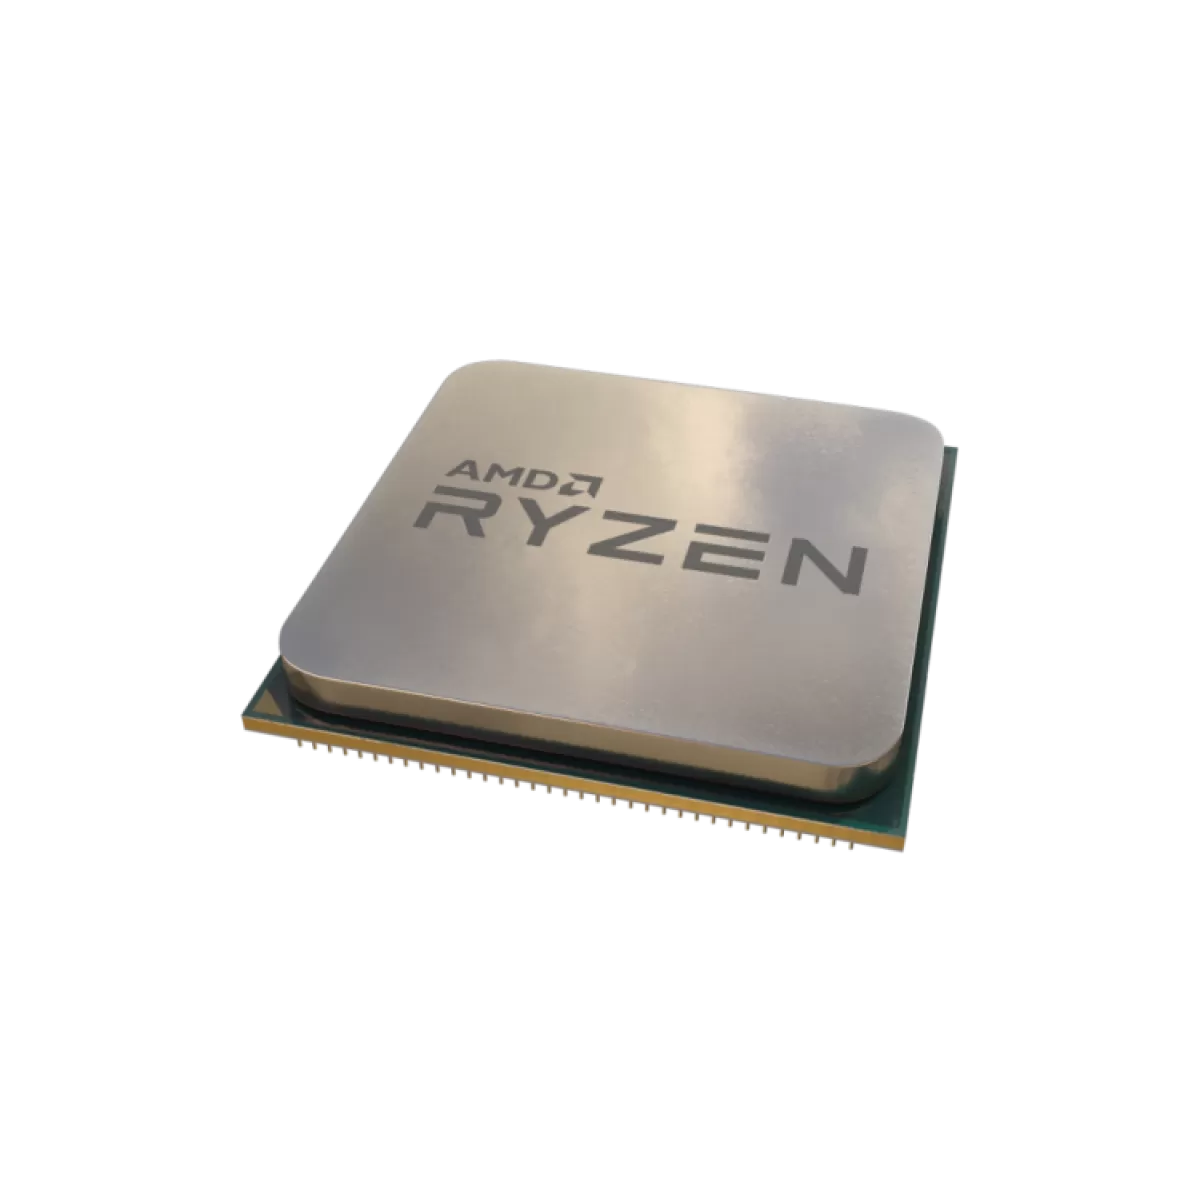 AMD RYZEN 3 2500X 4GHZ MPK AM4